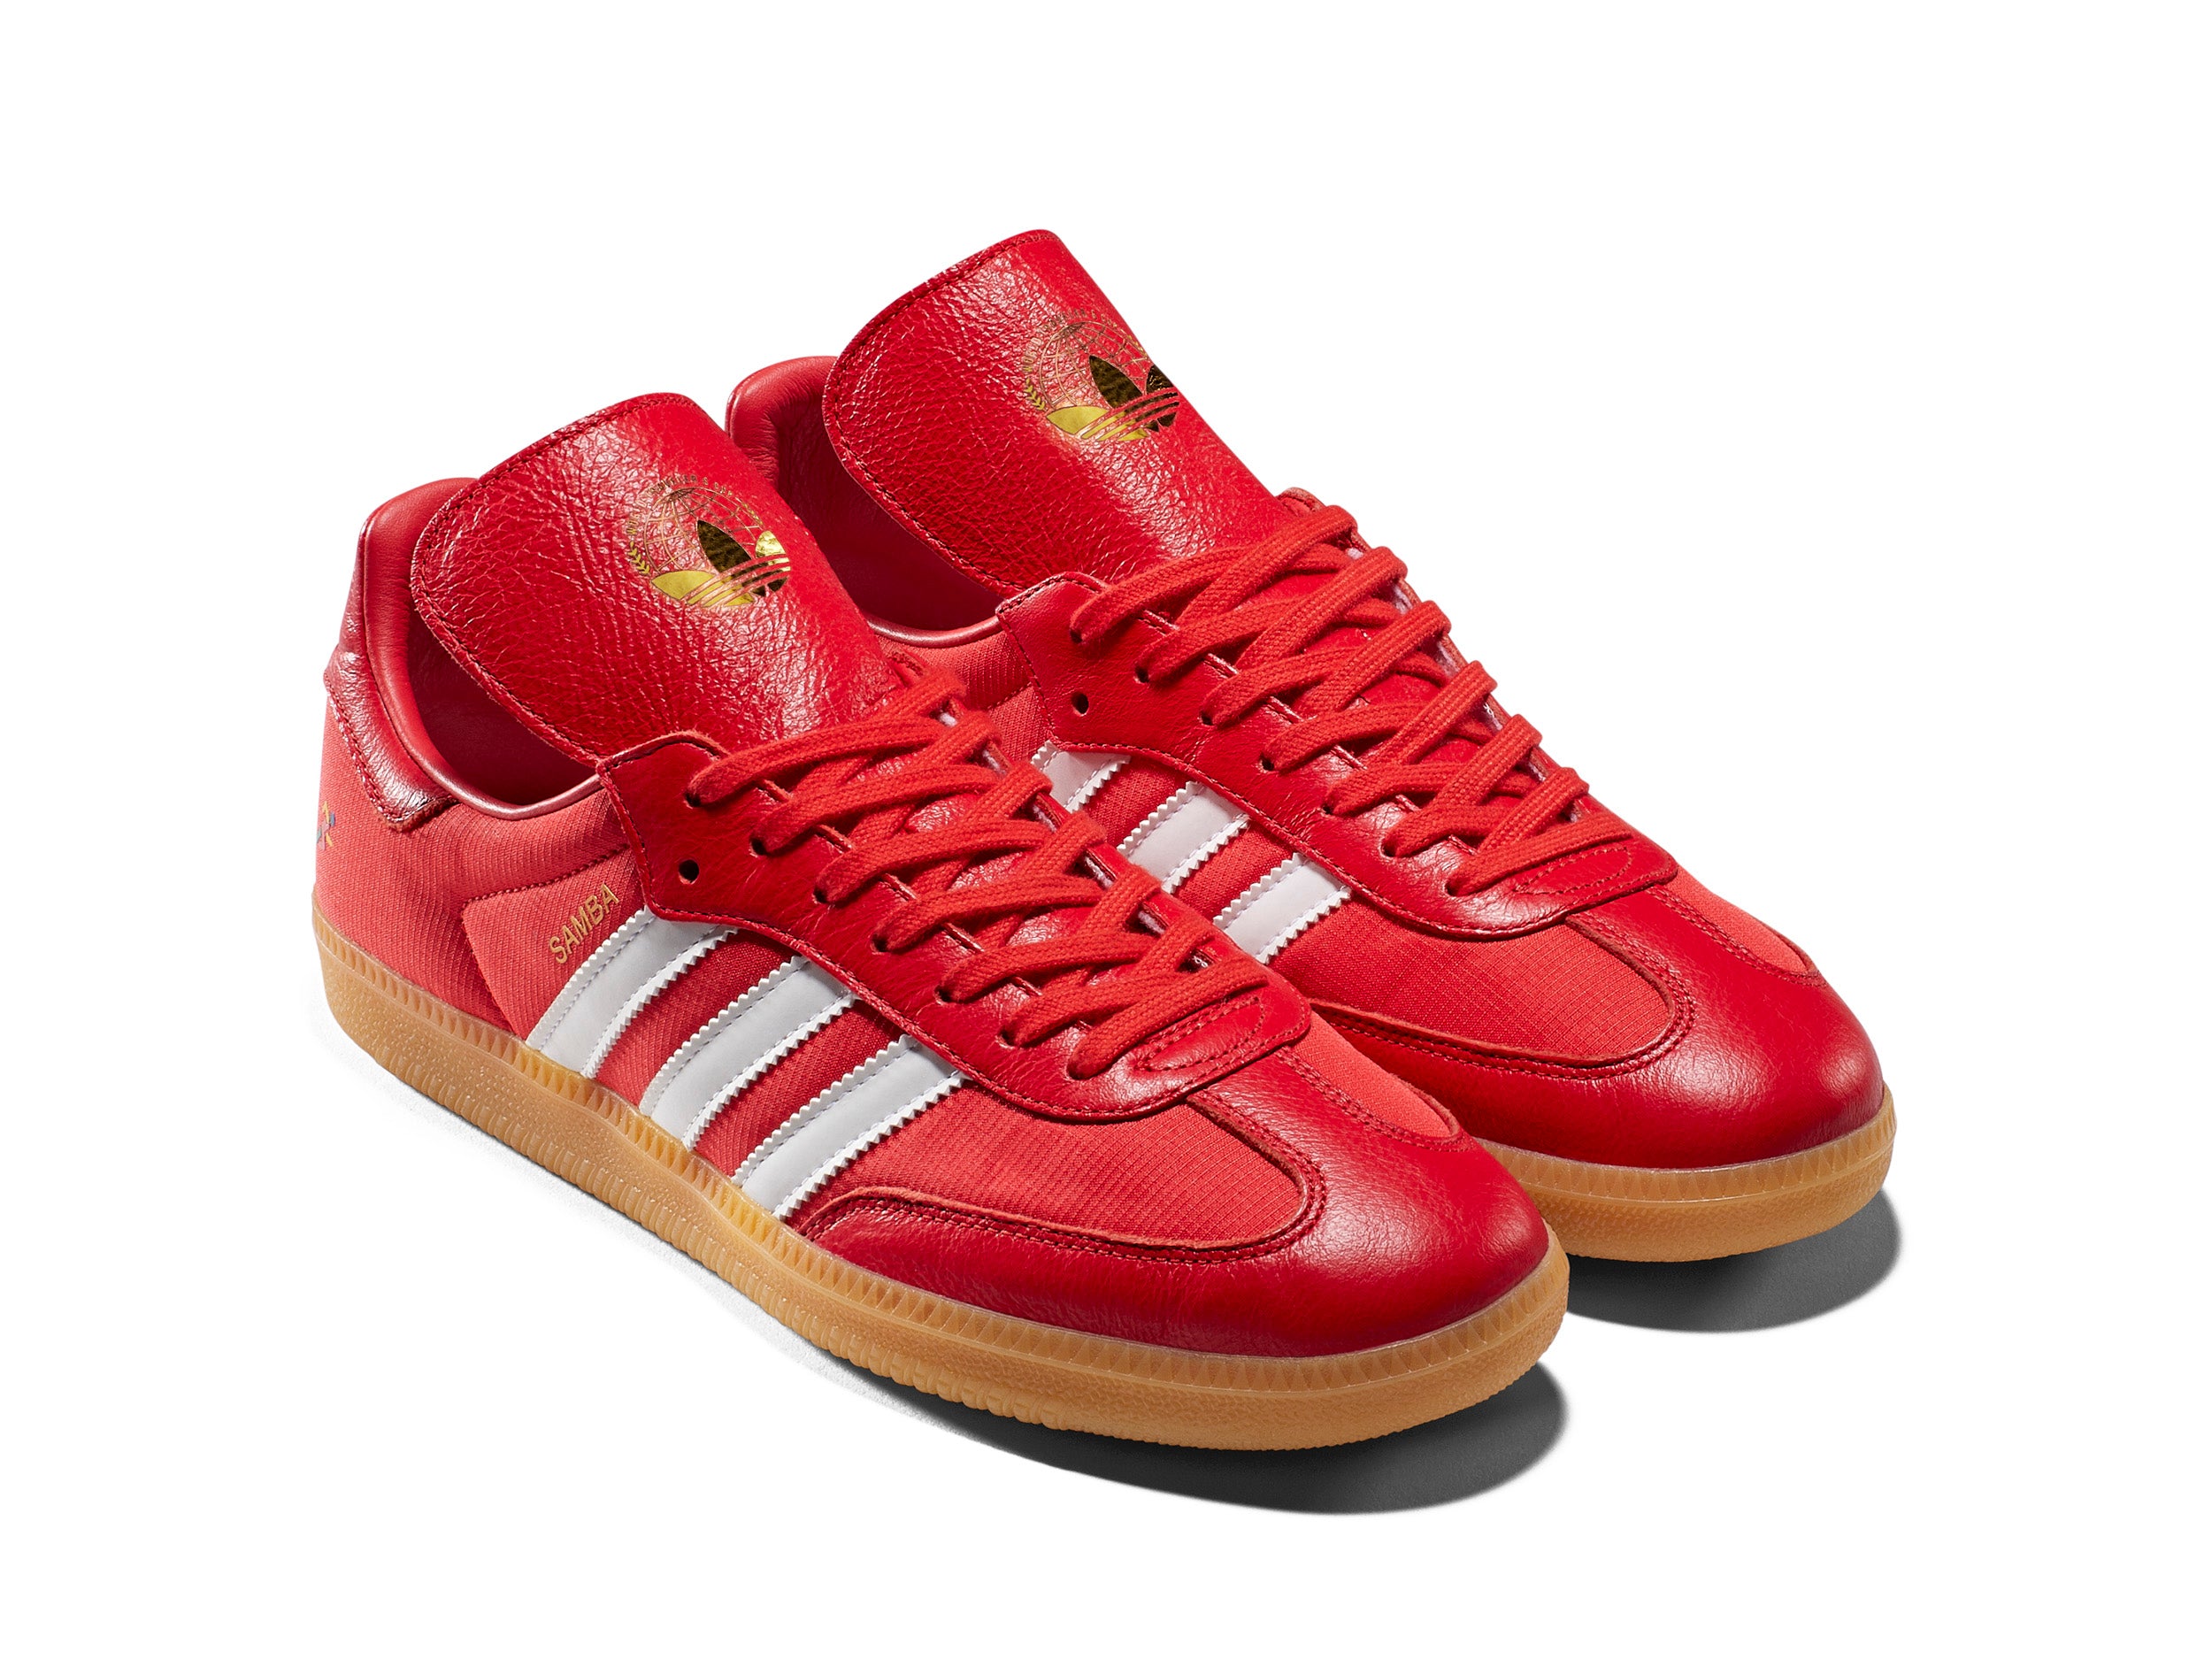 Adidas X Samba (Red) – Oyster